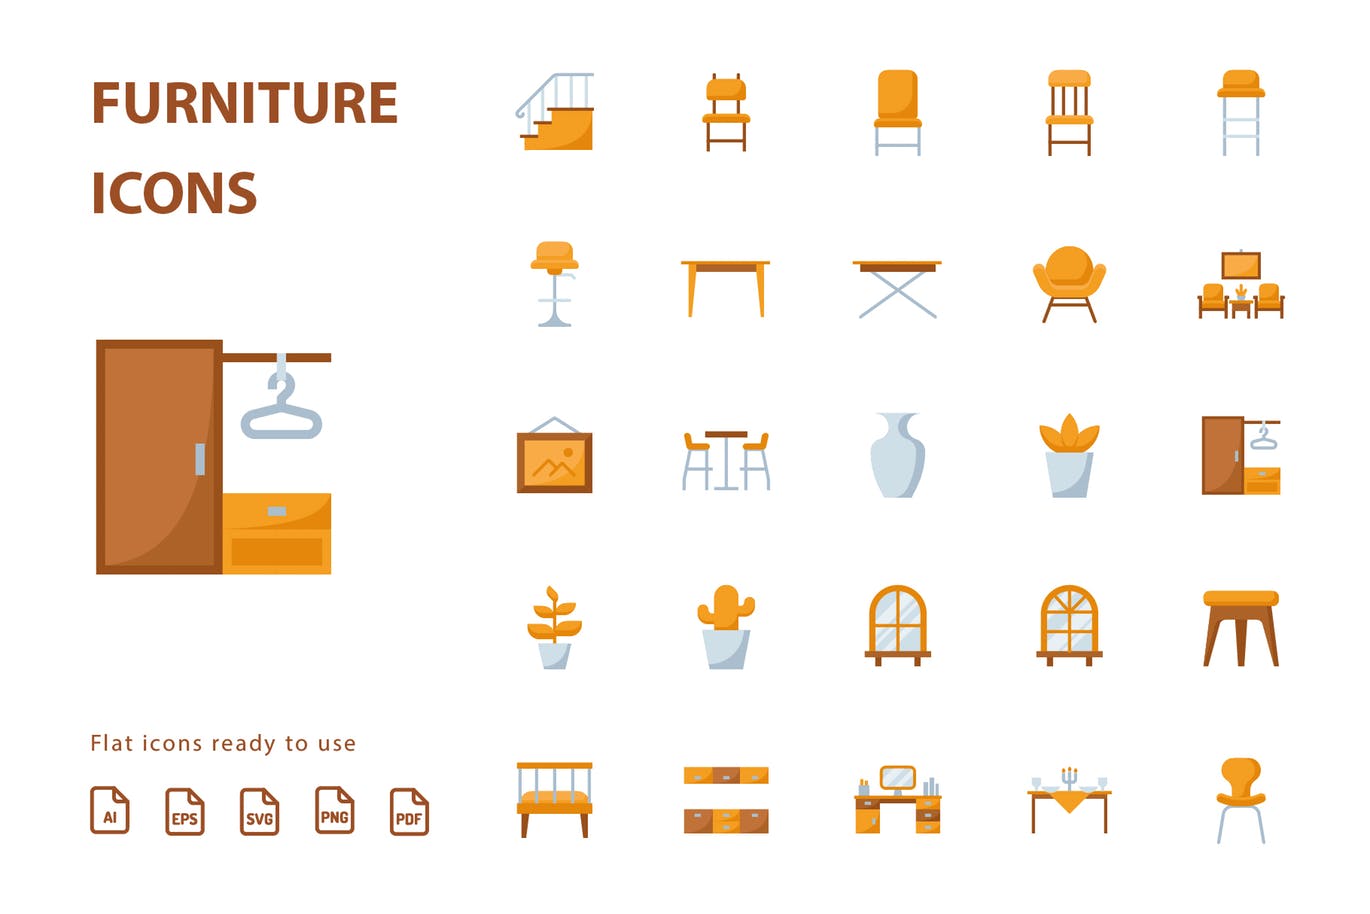 25枚家具主题扁平设计风格矢量蚂蚁素材精选图标v3 Furniture Flat Part 3插图(1)